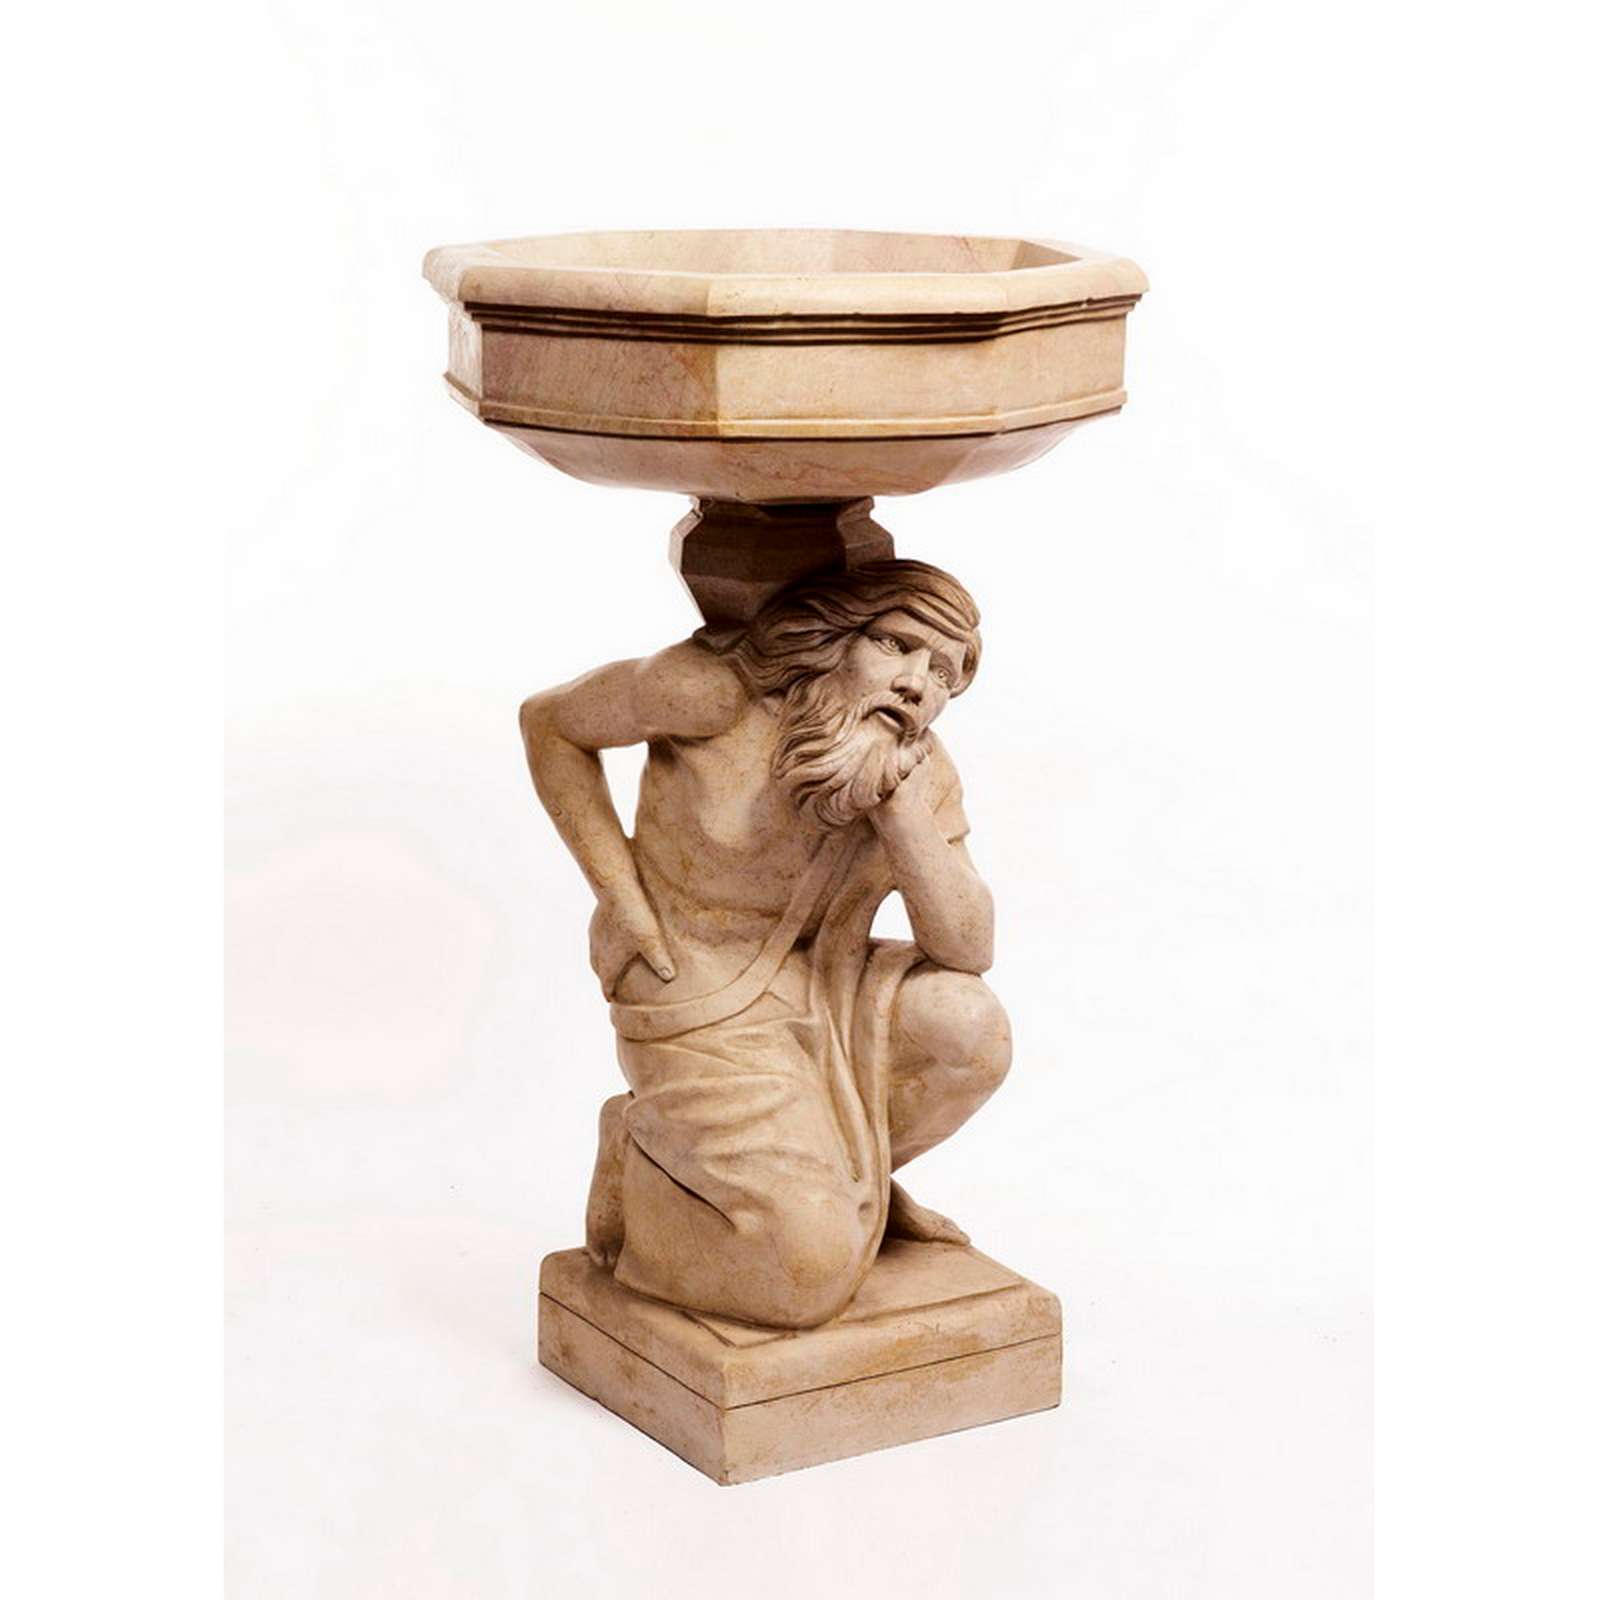 Antica fontana in marmo. Epoca fine 1800. - Fontane Antiche - Arredo Giardino - Prodotti - Antichità Fiorillo